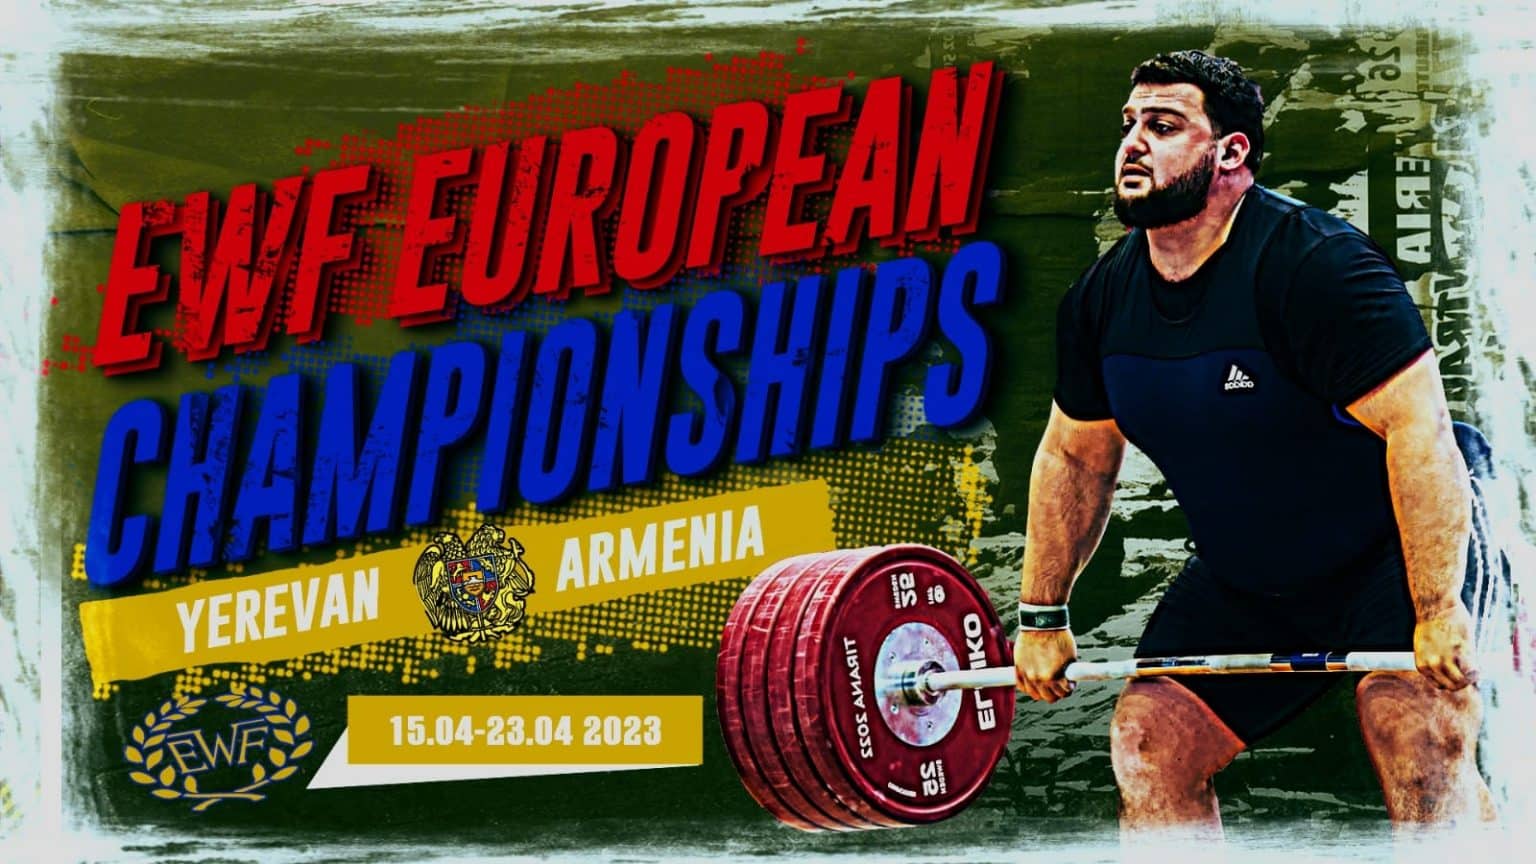 Ադրբեջանը ներկայացրել է 5 մարզիկների Երևանում կայանալիք ծանրամարտի առաջնությանը մասնակցելու համար